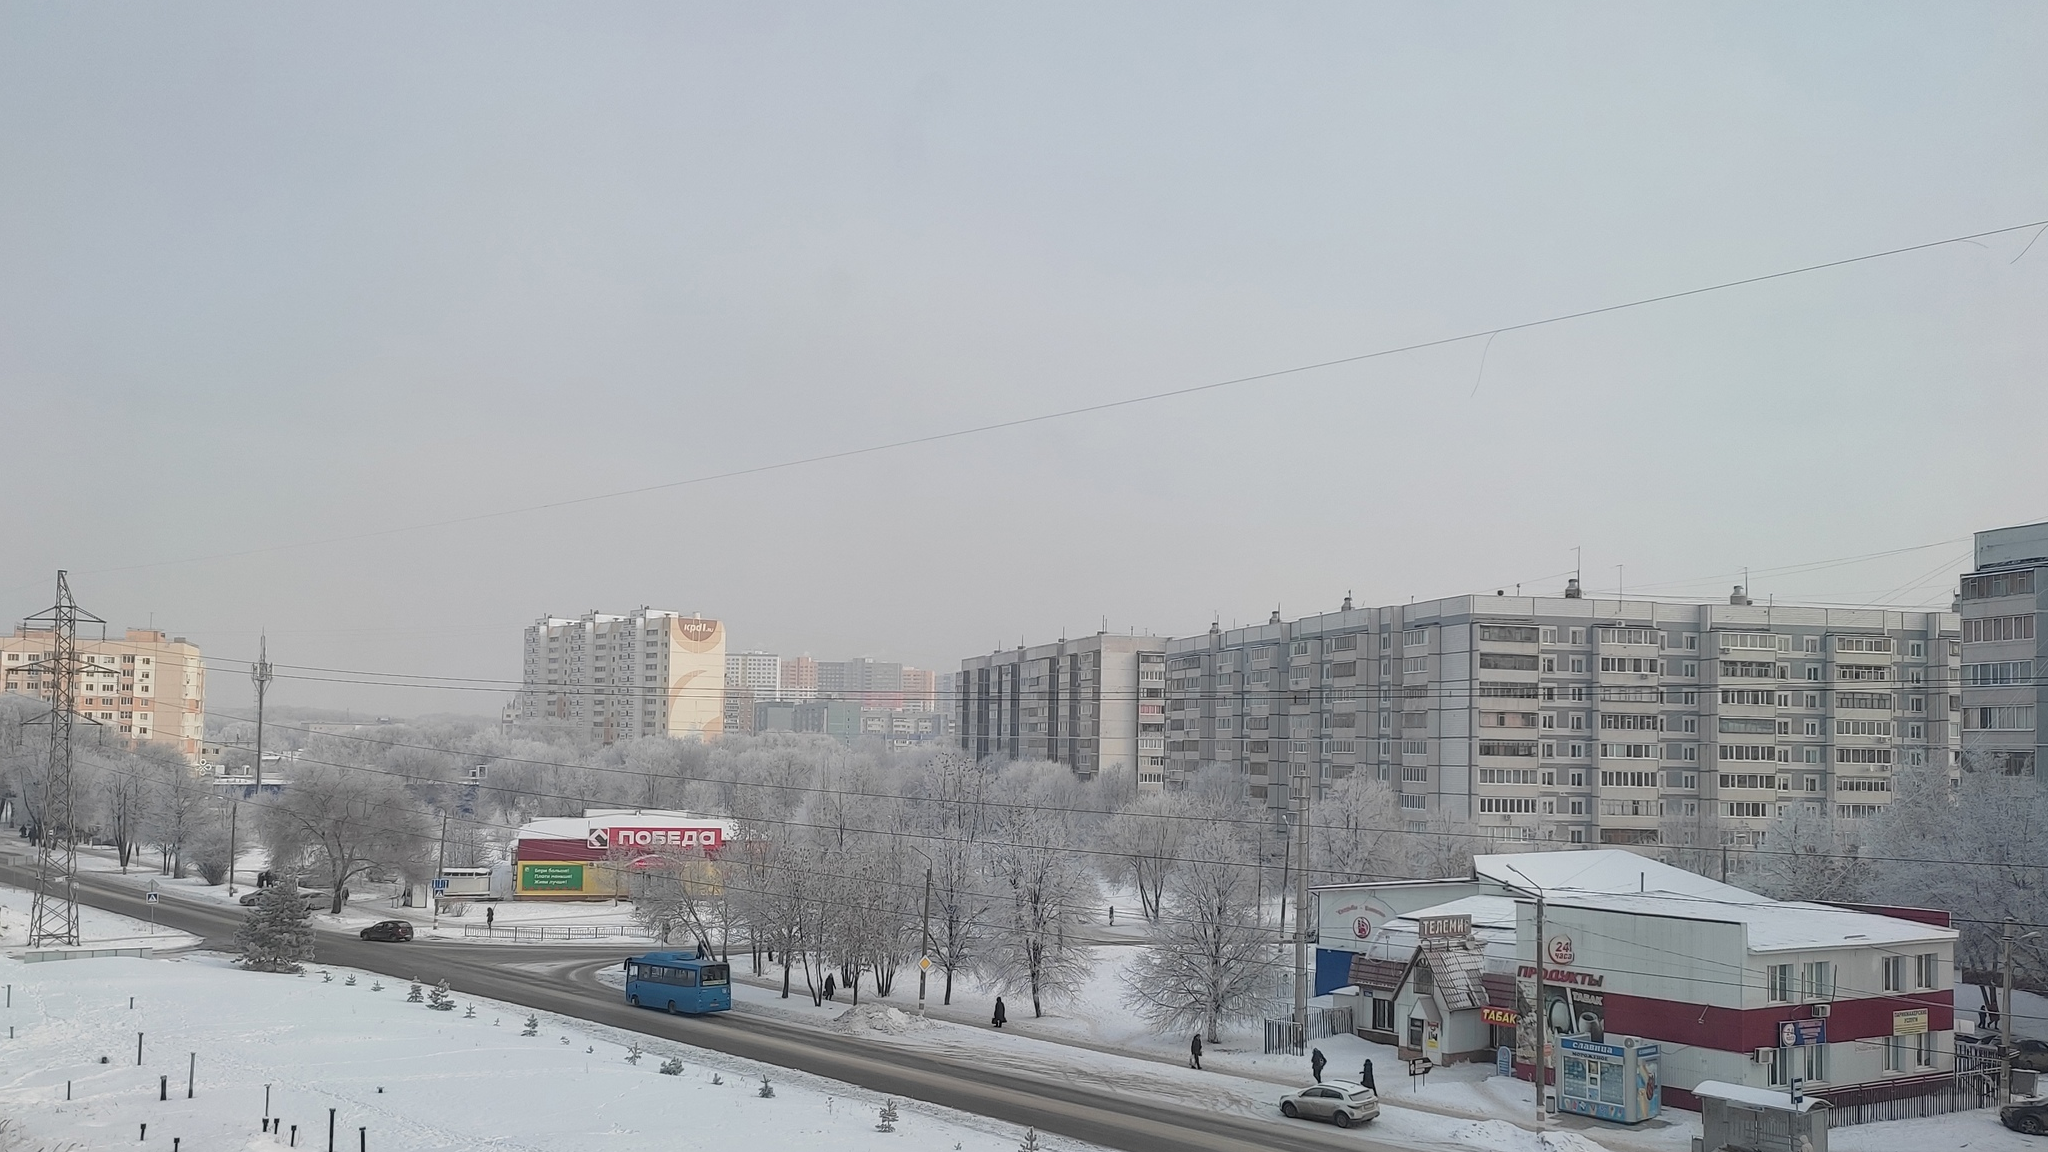 Погода в ульяновске в феврале. Ульяновск фото 2023 год. Ульяновск сегодня фото. Фото последний месяц зимы. 14 Февраля 2023 года Ульяновск погода фото.